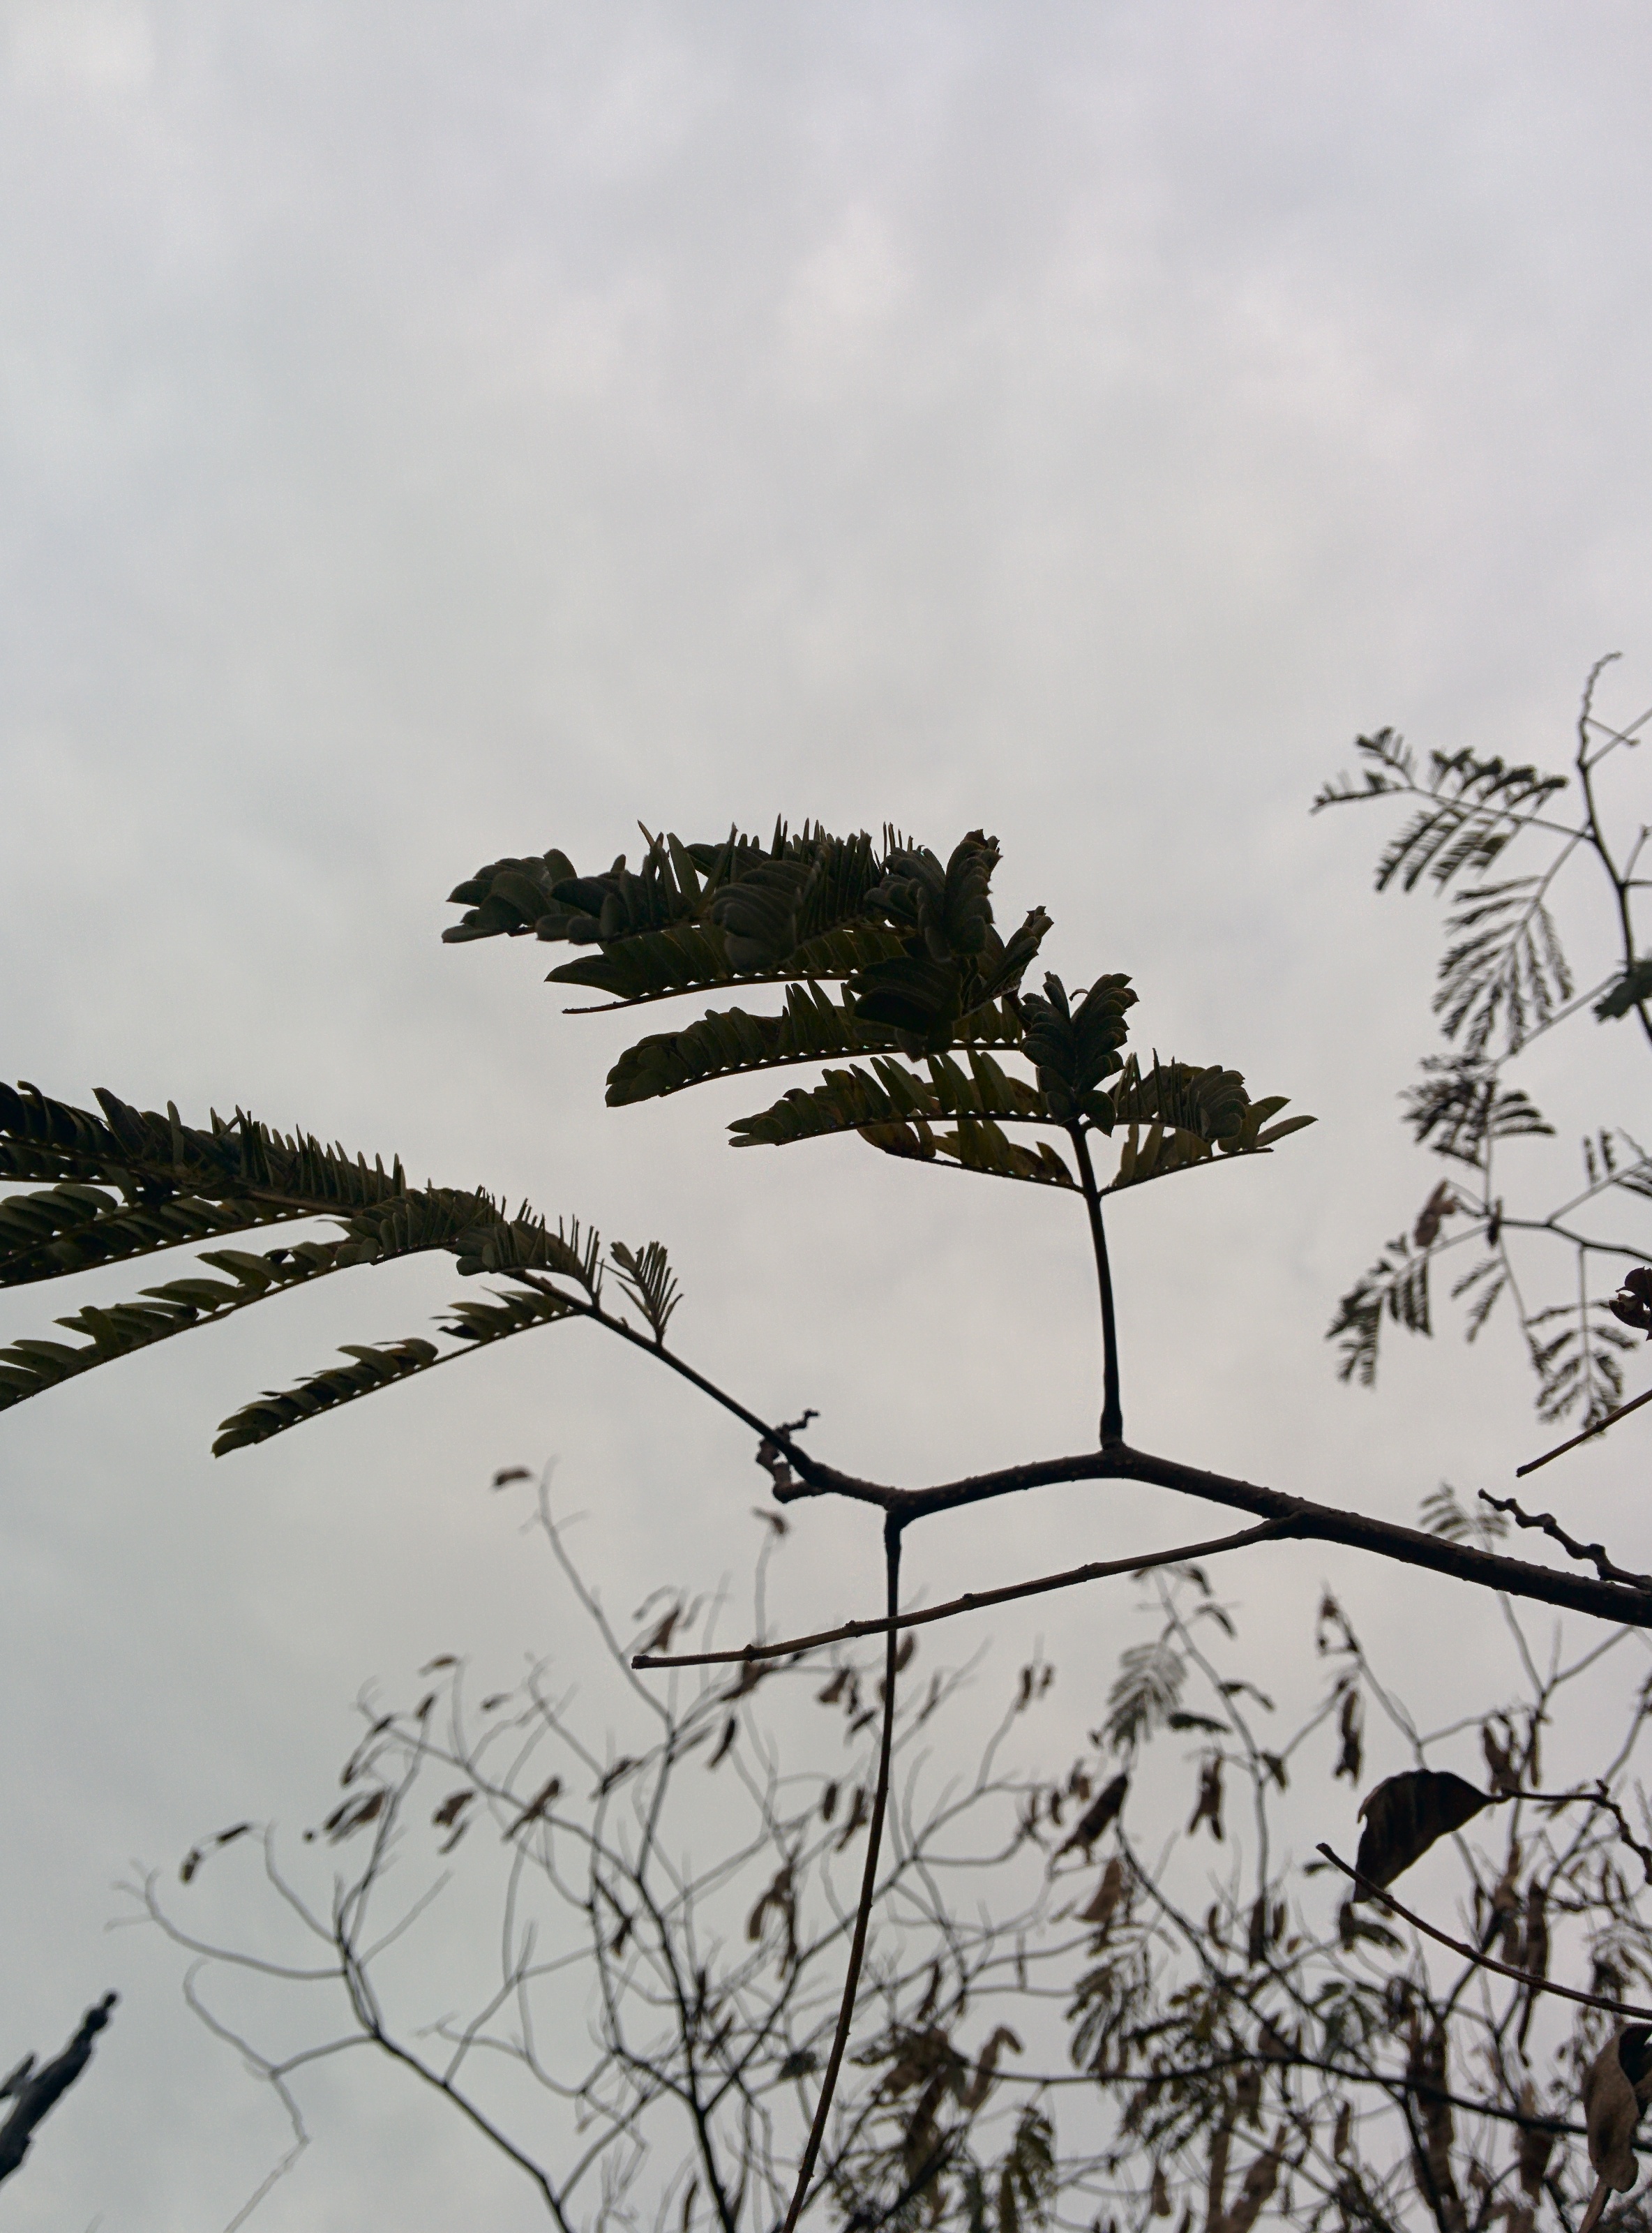 IMG_20151106_151051.jpg 가는 잎이 촘촘하게 나는 자귀나무 콩깍지